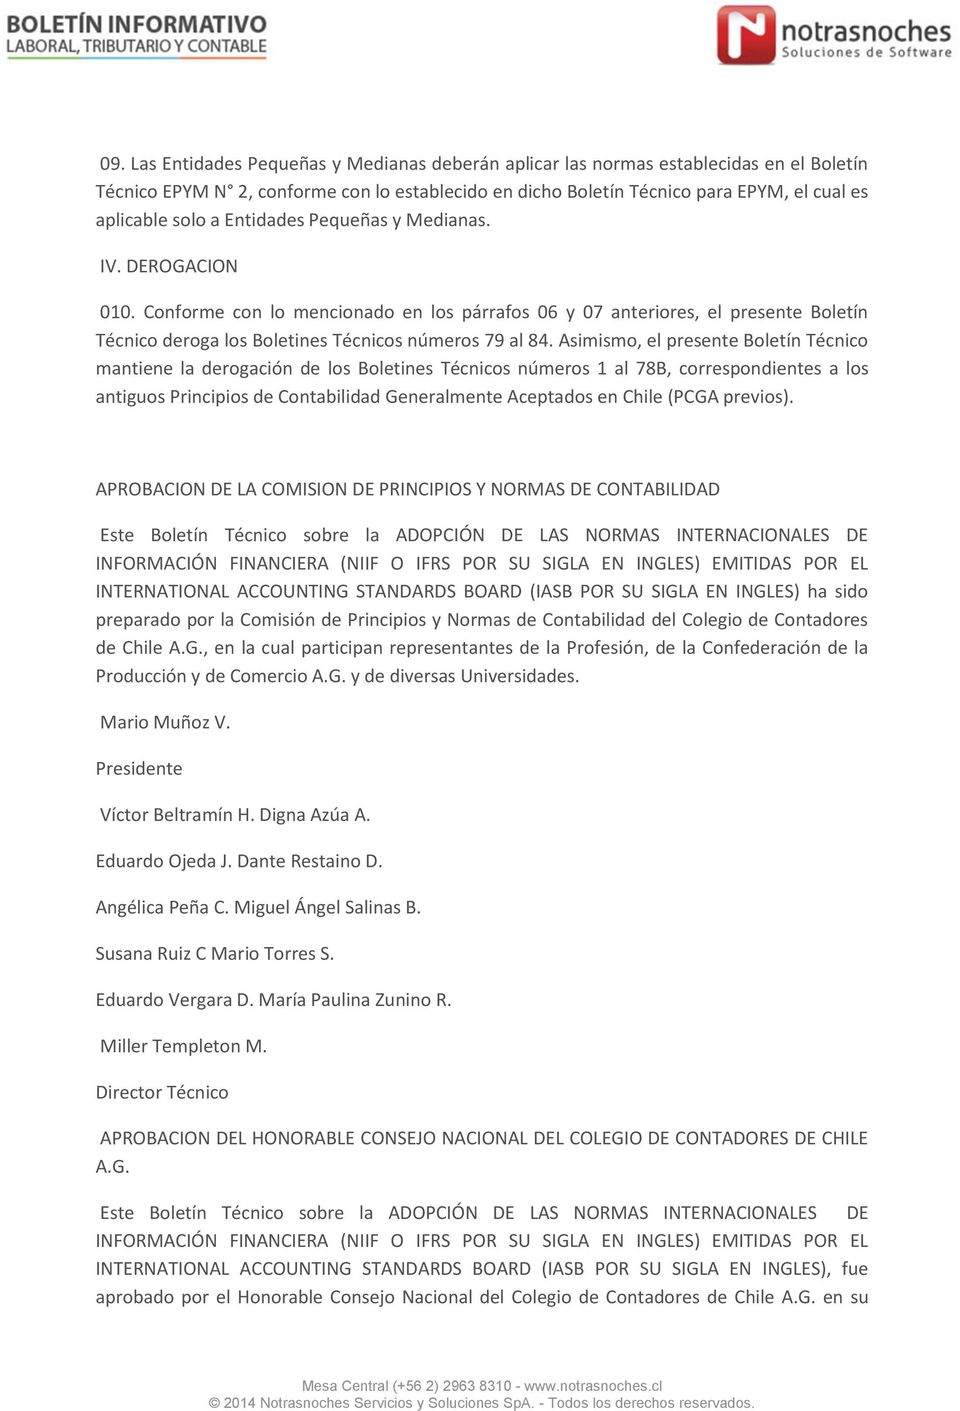 Asimismo, el presente Boletín Técnico mantiene la derogación de los Boletines Técnicos números 1 al 78B, correspondientes a los antiguos Principios de Contabilidad Generalmente Aceptados en Chile